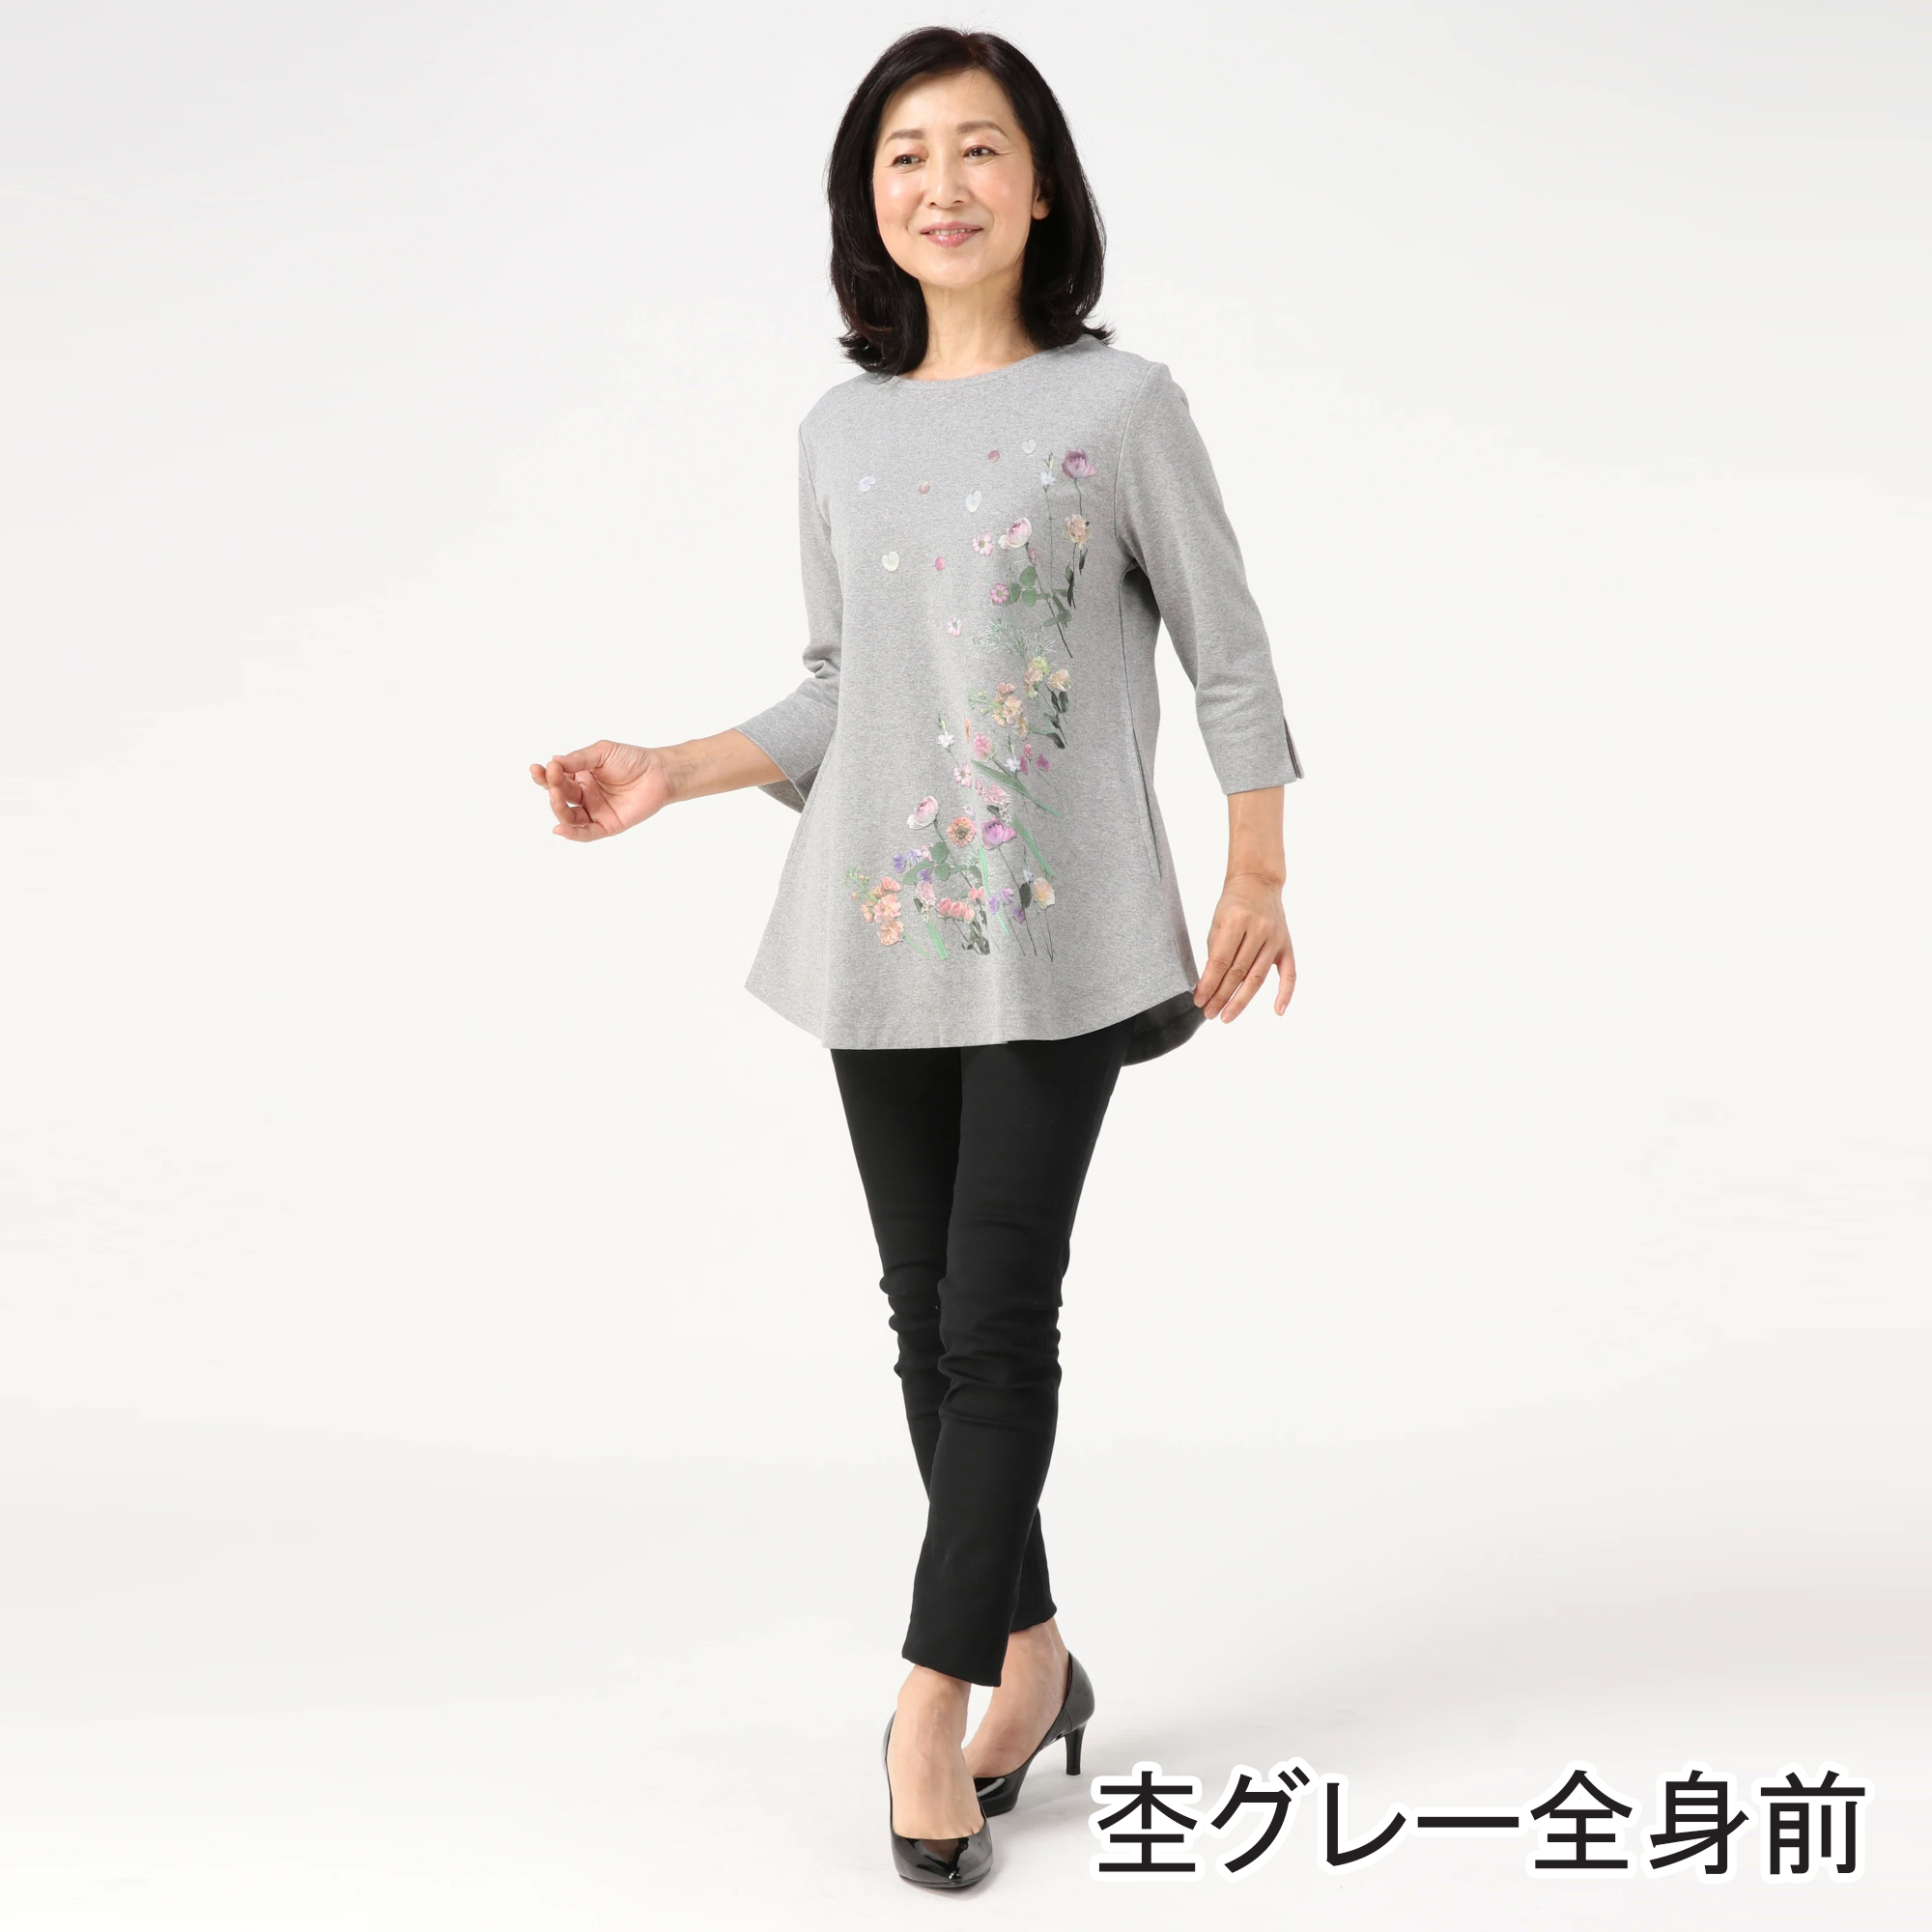 【公式】Fairy Style collection(フェアリースタイル) / ラウンドボトムロングTシャツ